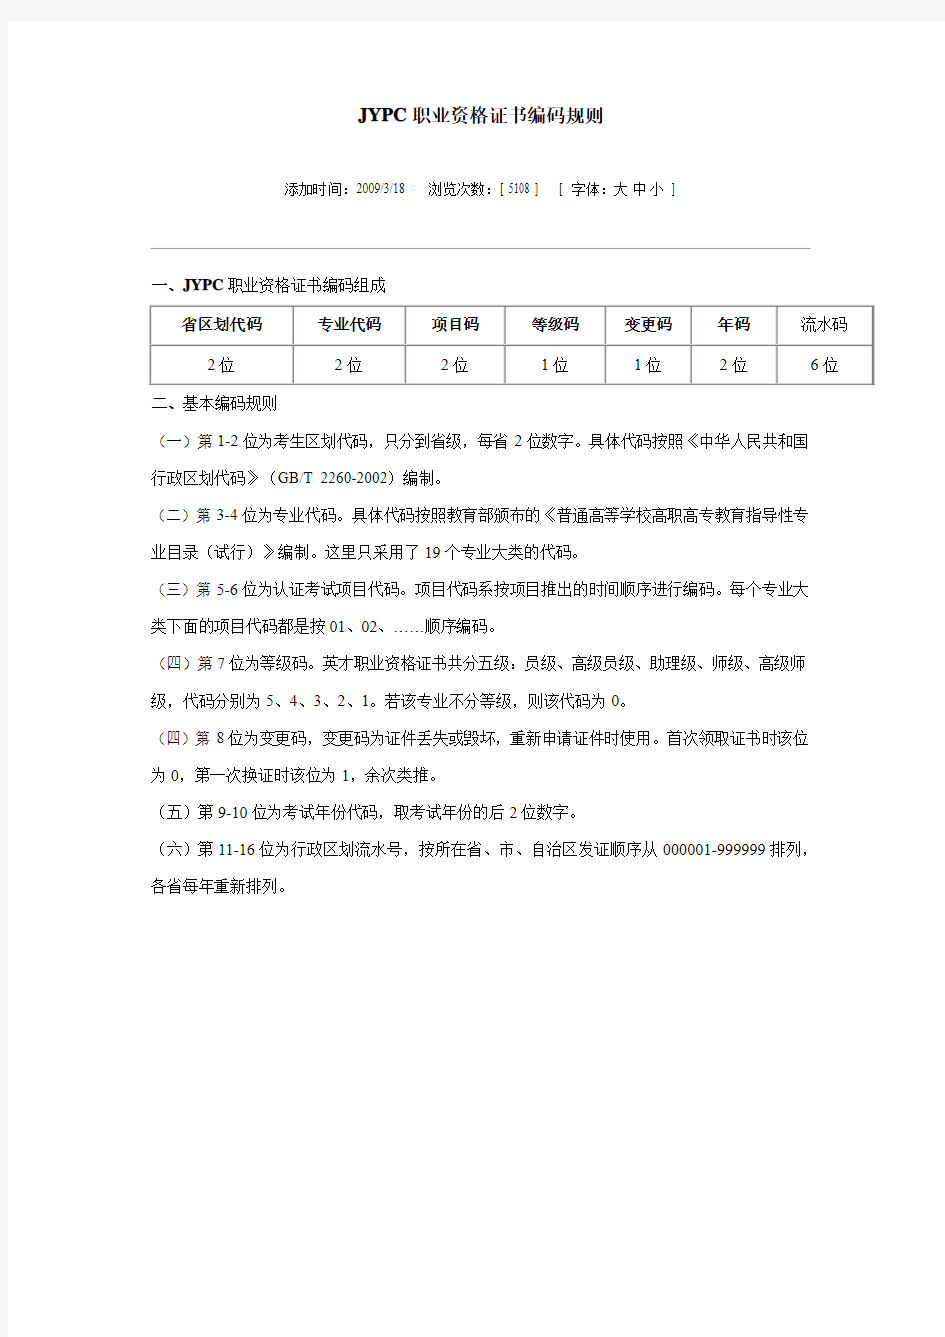 JYPC职业资格证书编码规则